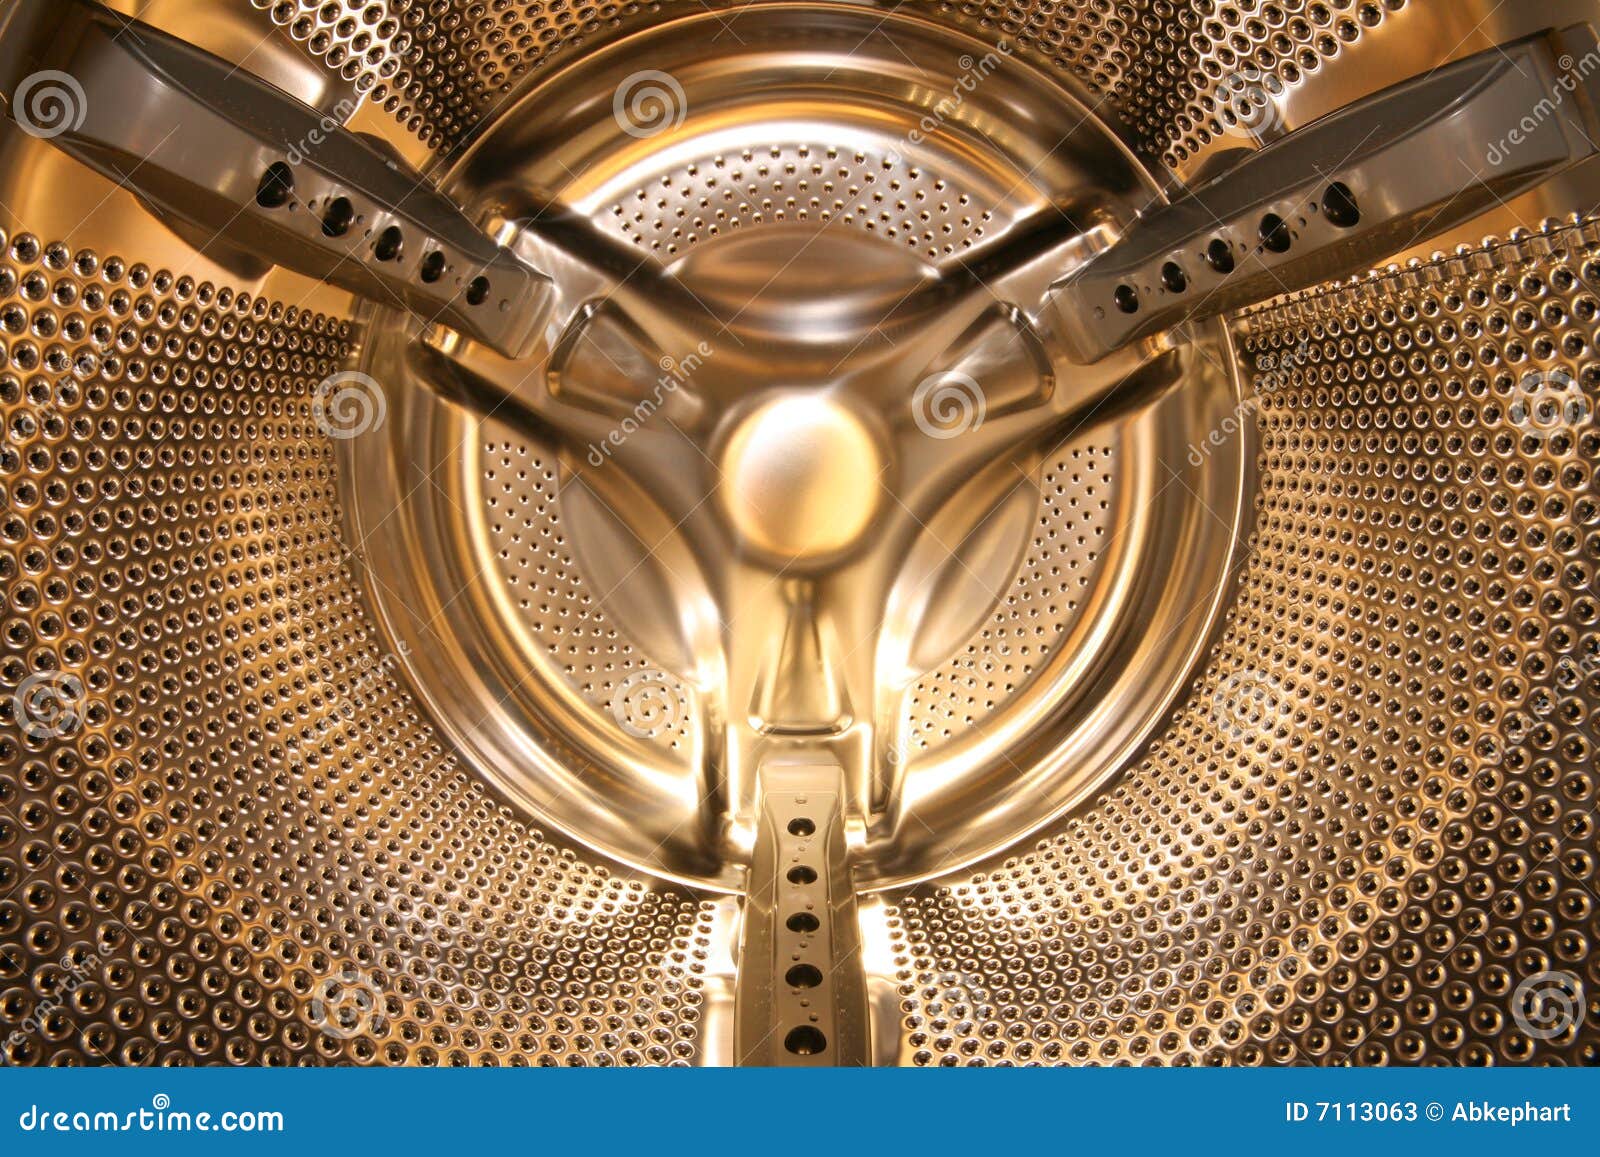 Inside The Golden Washing Machine Stock Image Image of